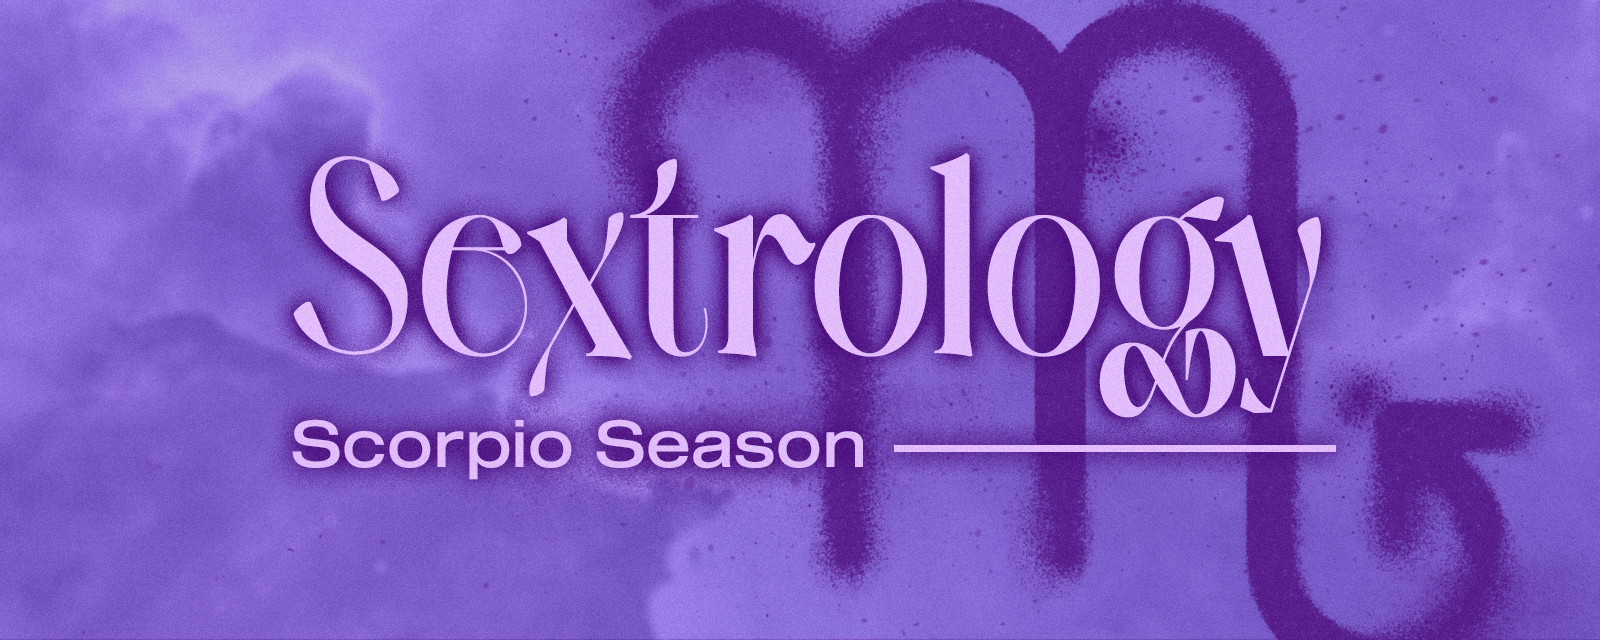 Dein Sextrology | Scorpio Season